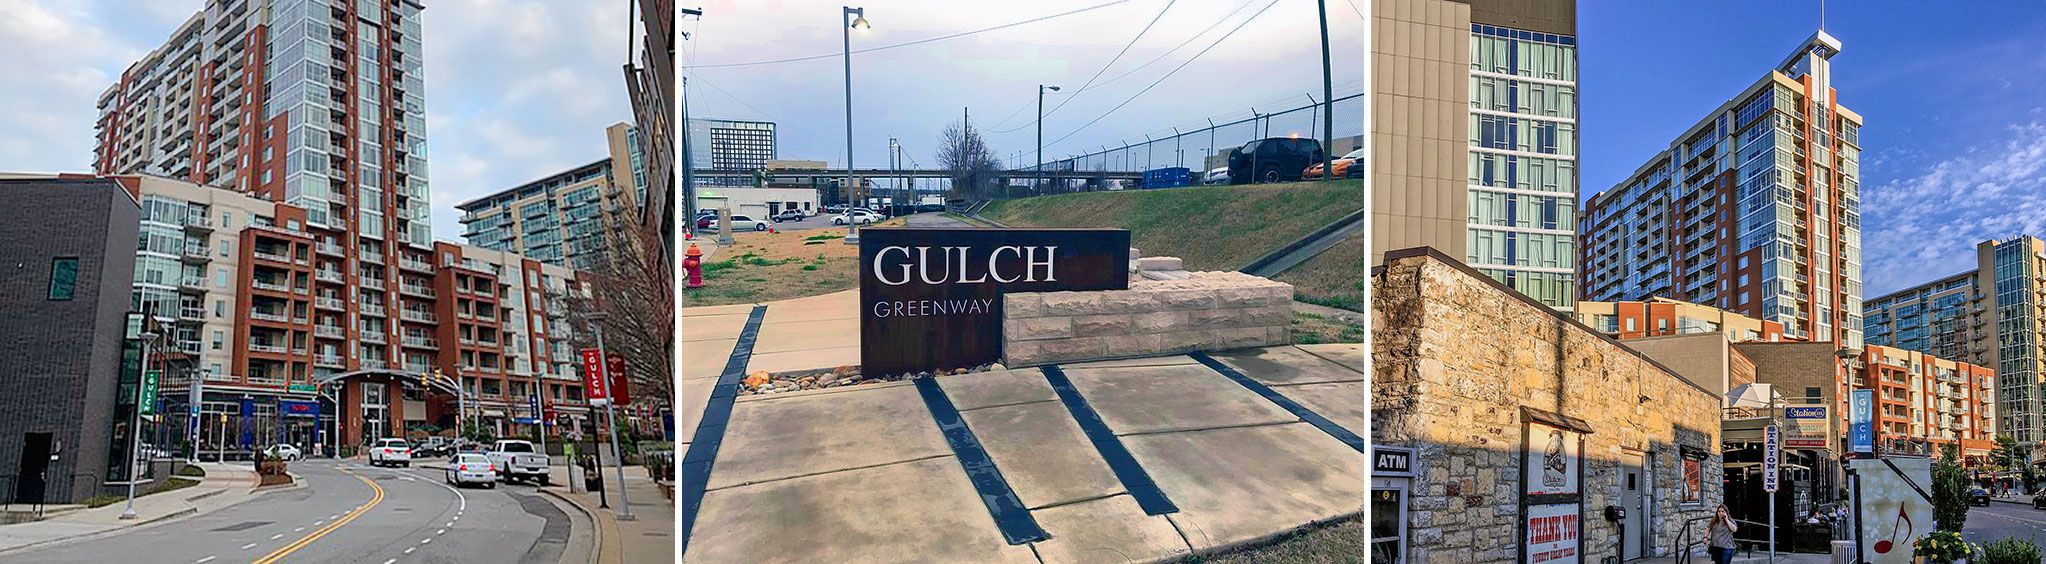 The Gulch in Nashville